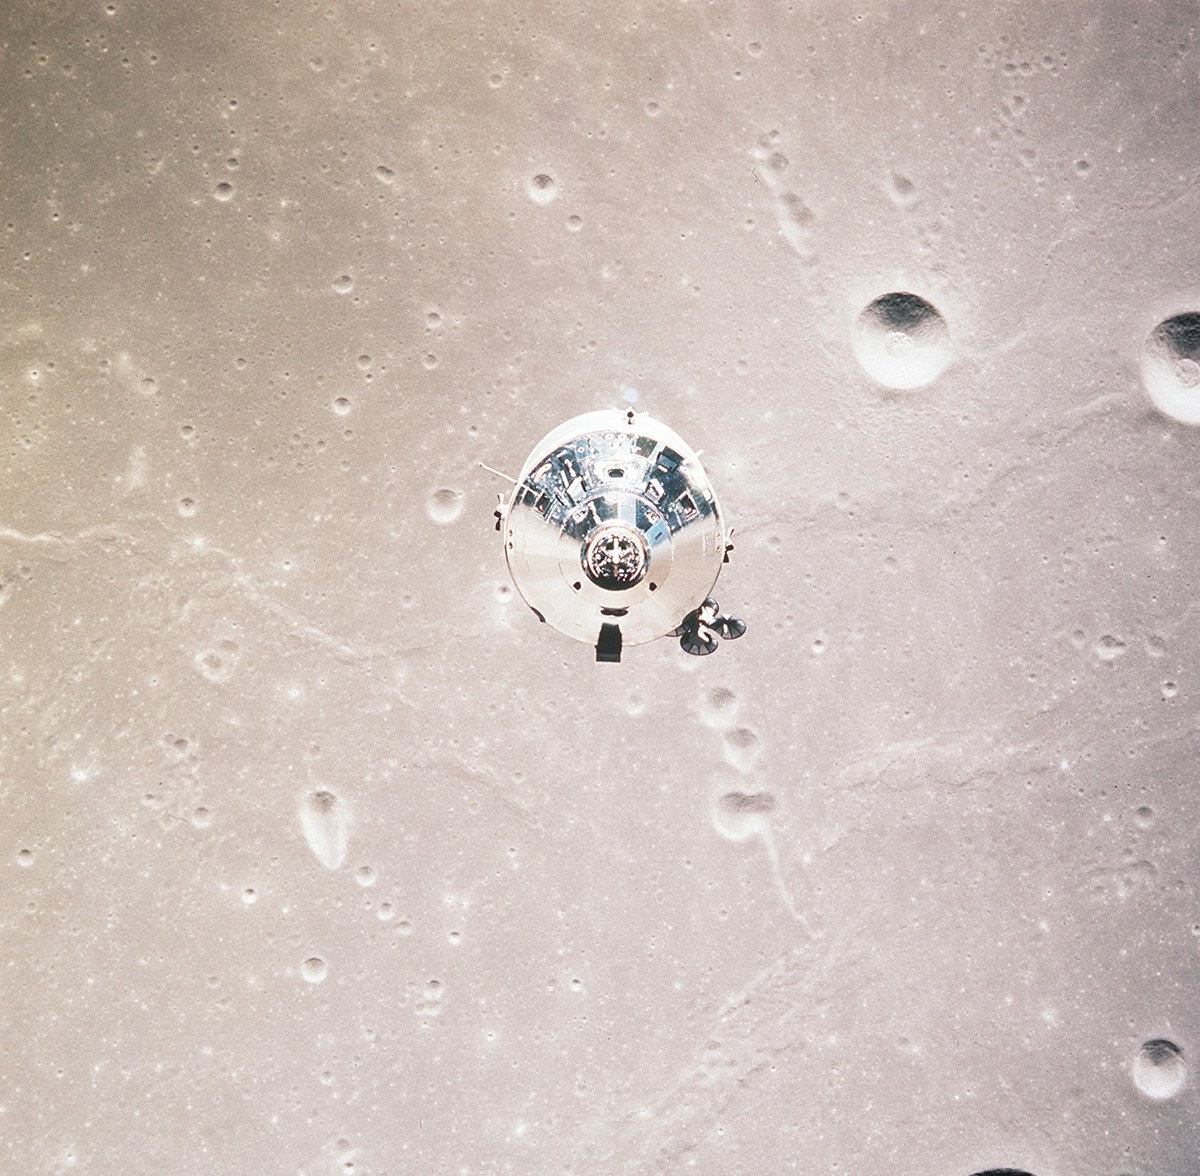 орбитальный лунный модуль